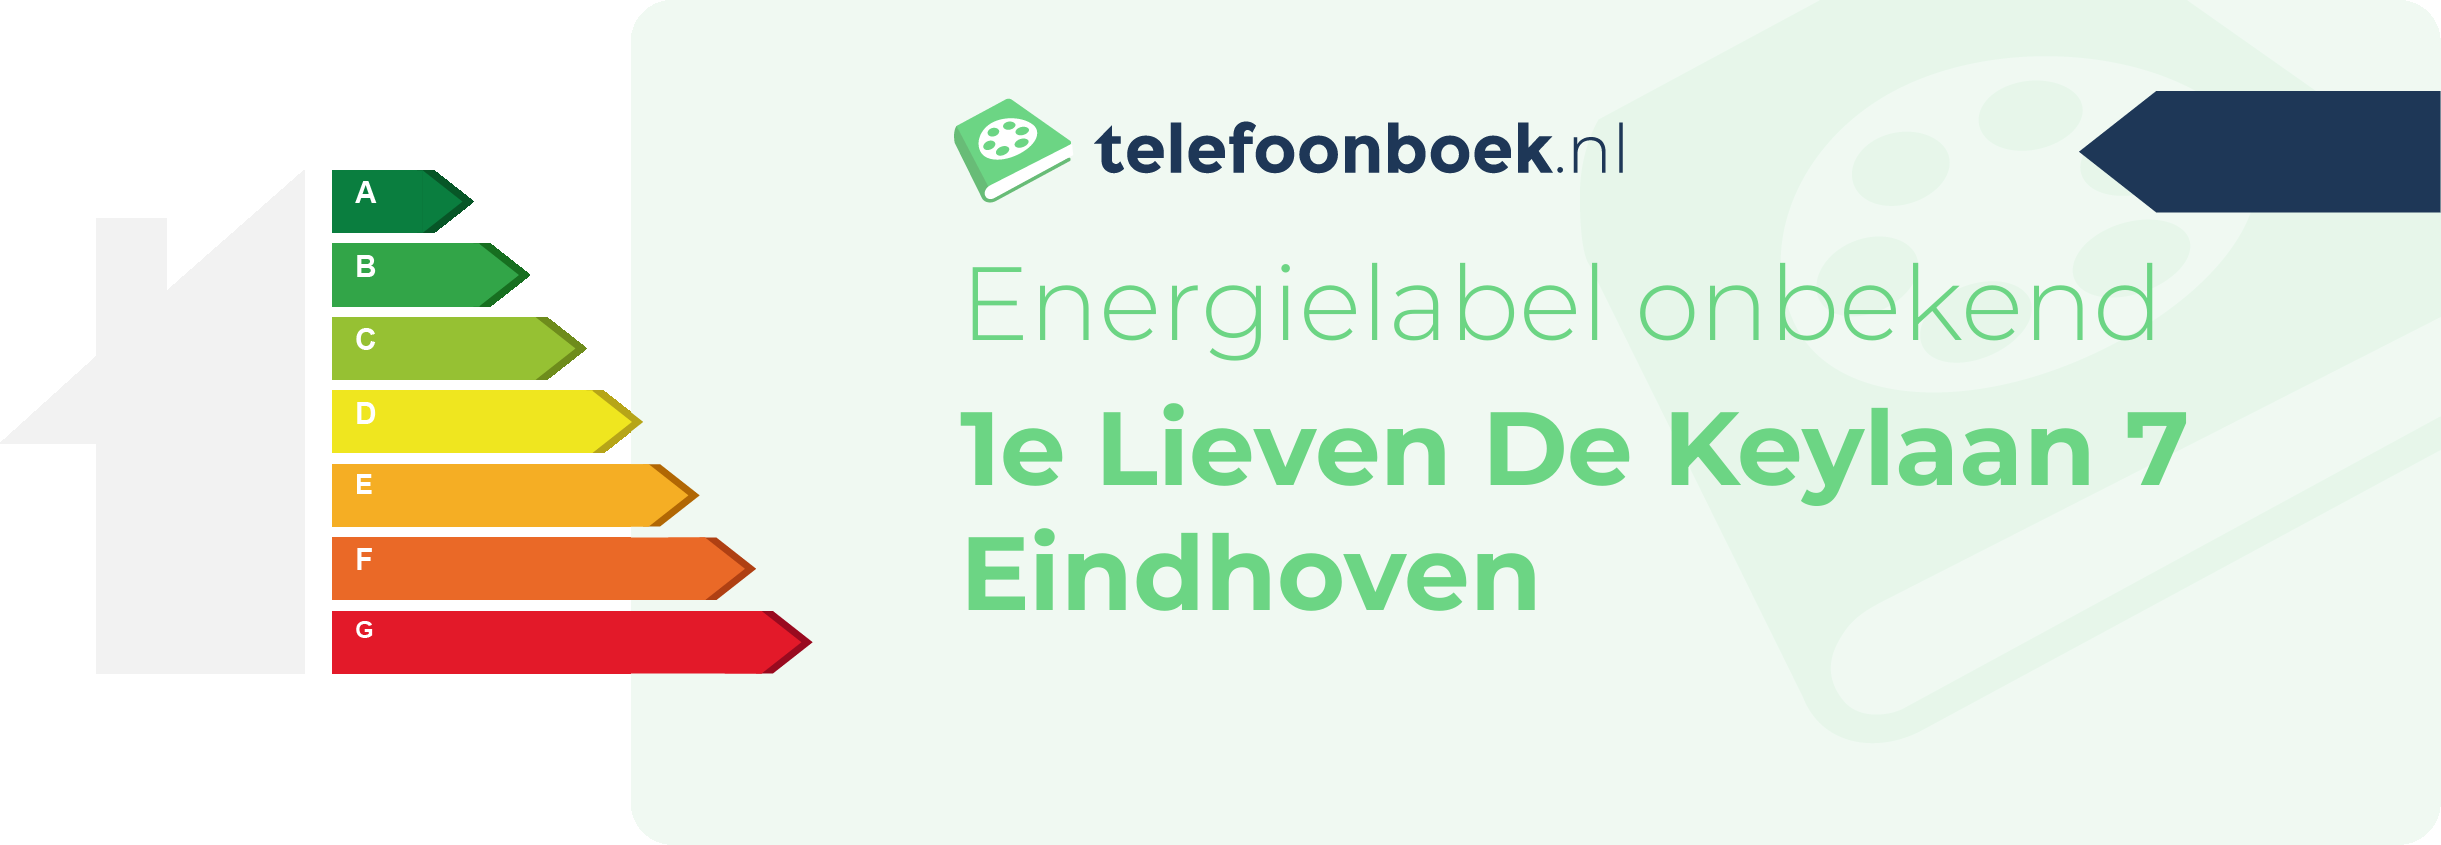 Energielabel 1e Lieven De Keylaan 7 Eindhoven